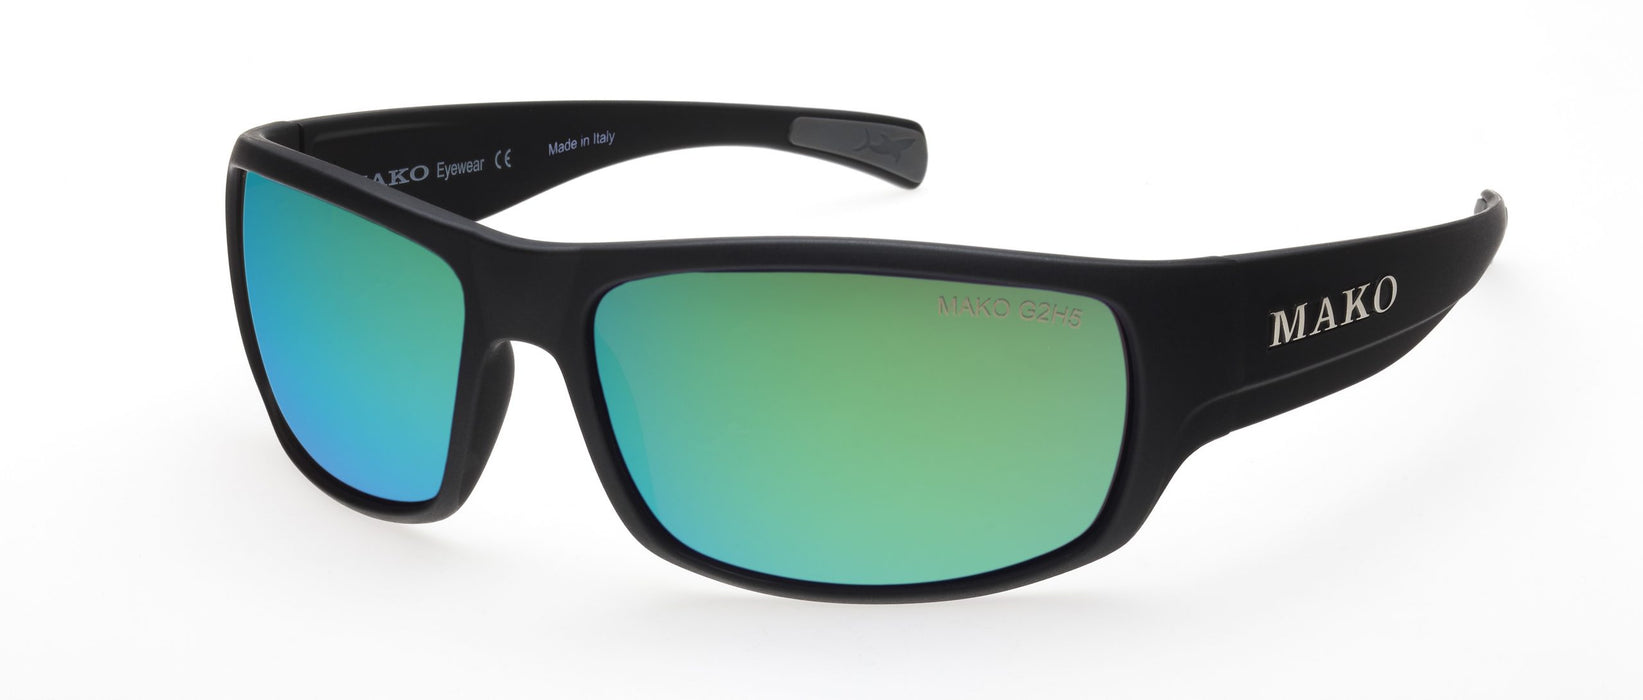 Mako Escape 9581 Green Glass Lens Sunglasses M01-G2H5